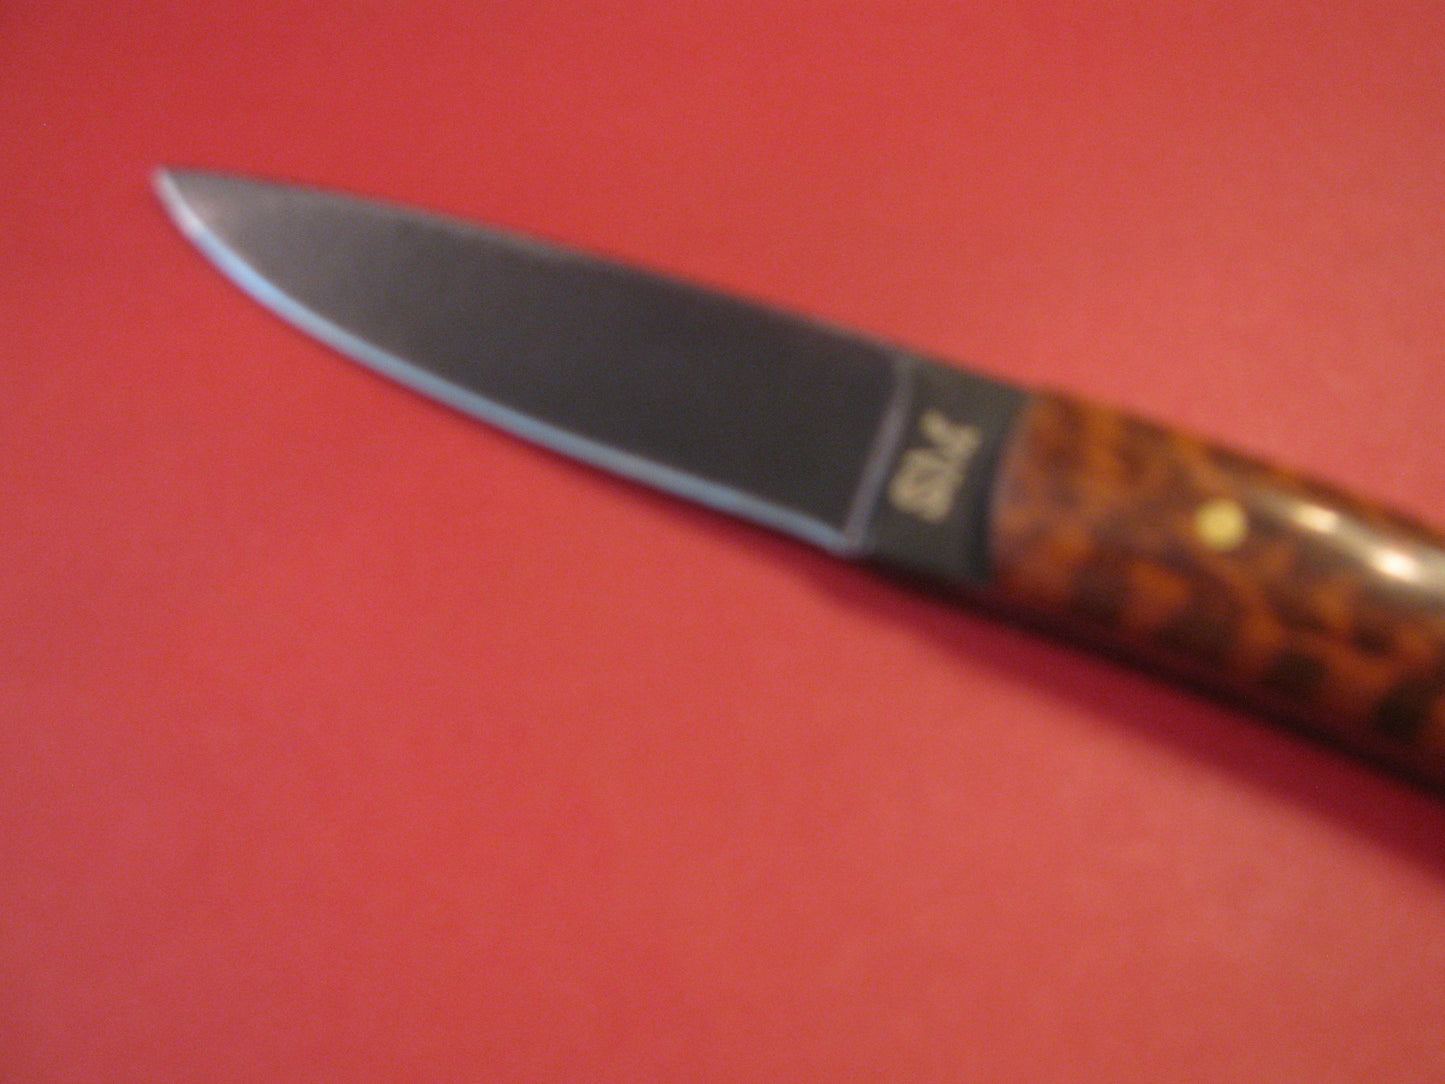 FX-108 Snakewood Skinning Knife